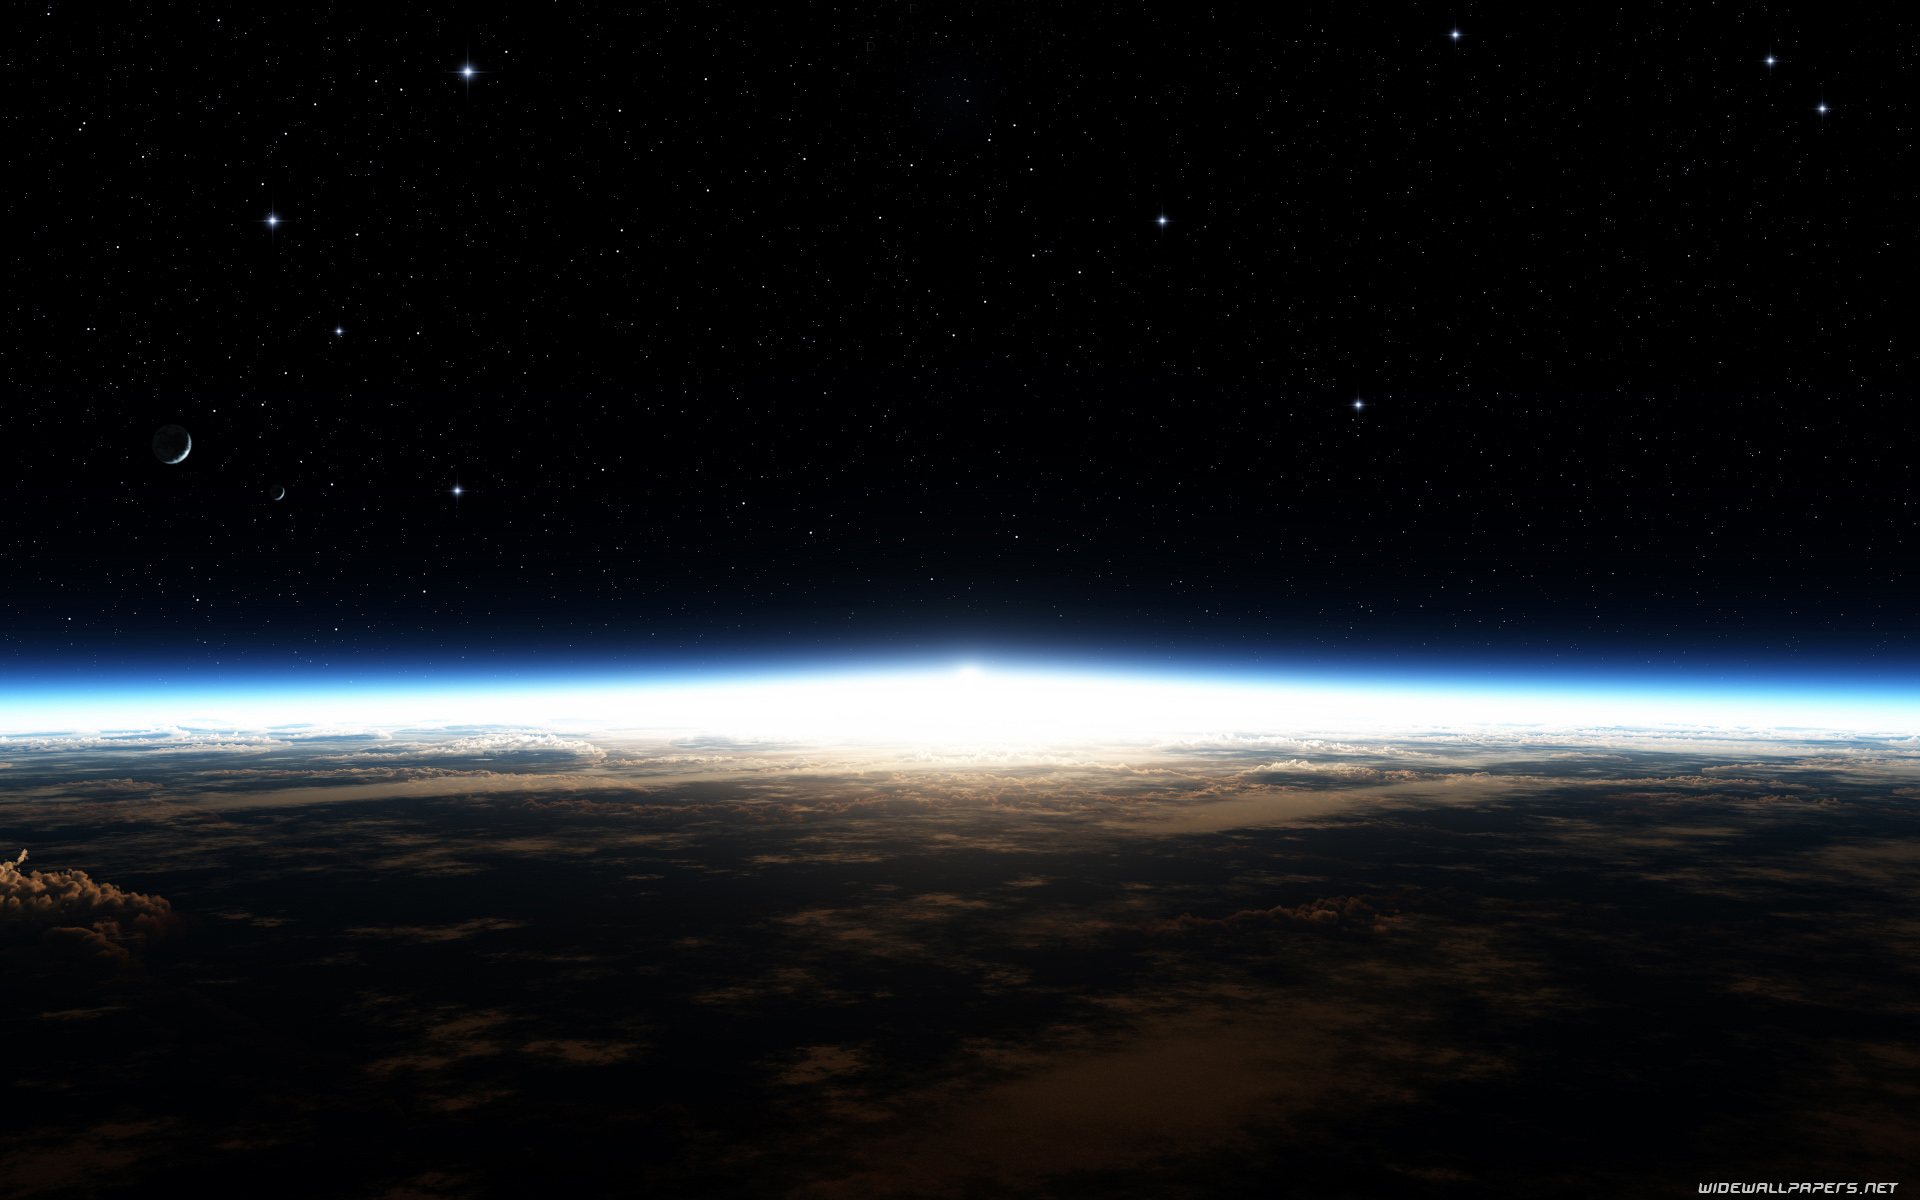 Earth From Space Desktop Wallpaper